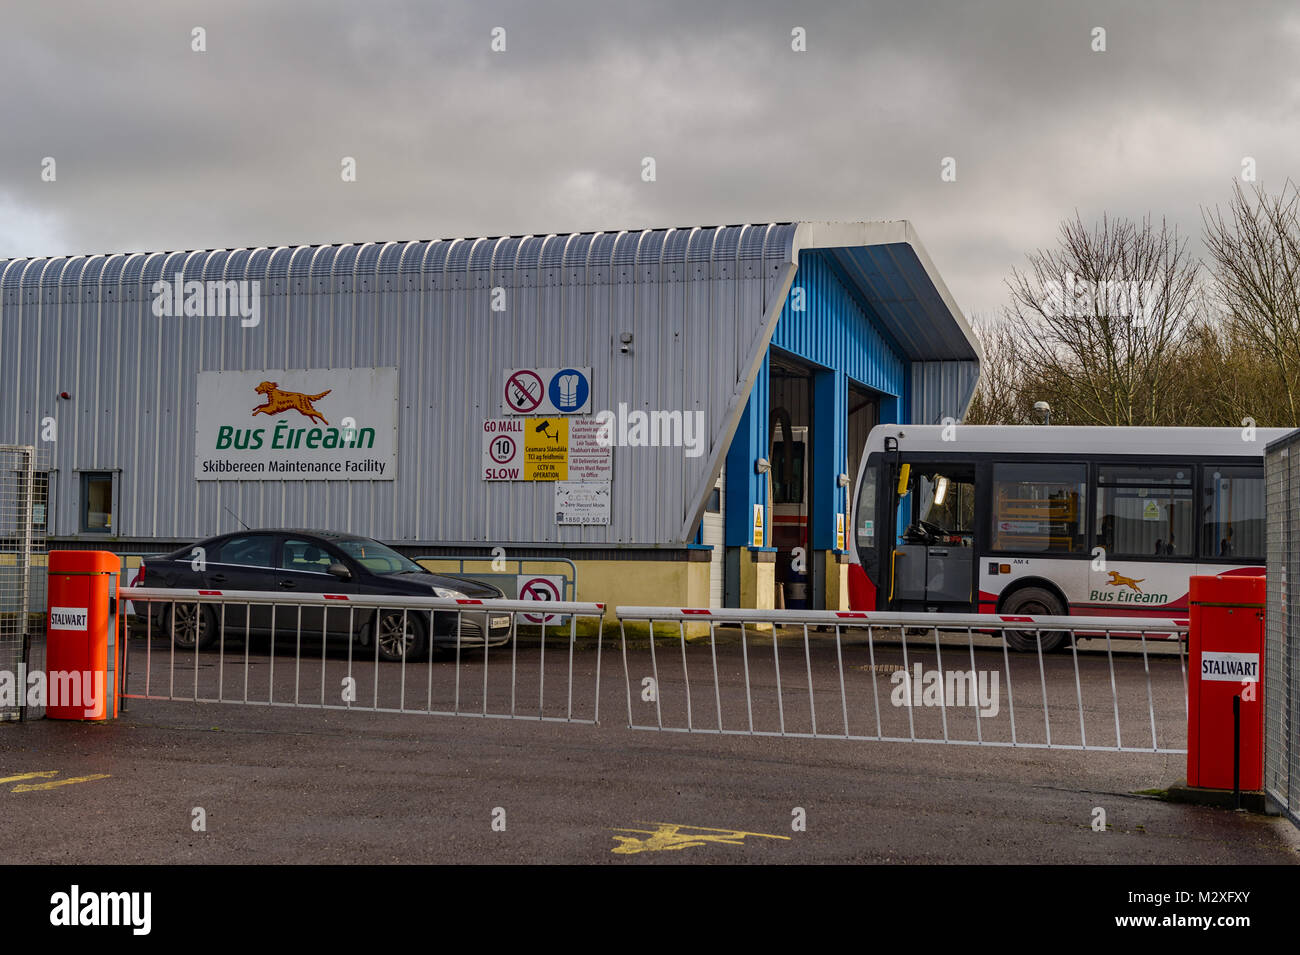 Bus Eireann (Irish national bus company), l'Installation de maintenance de Skibbereen Skibbereen, comté de Cork, Irlande avec copie espace. Banque D'Images